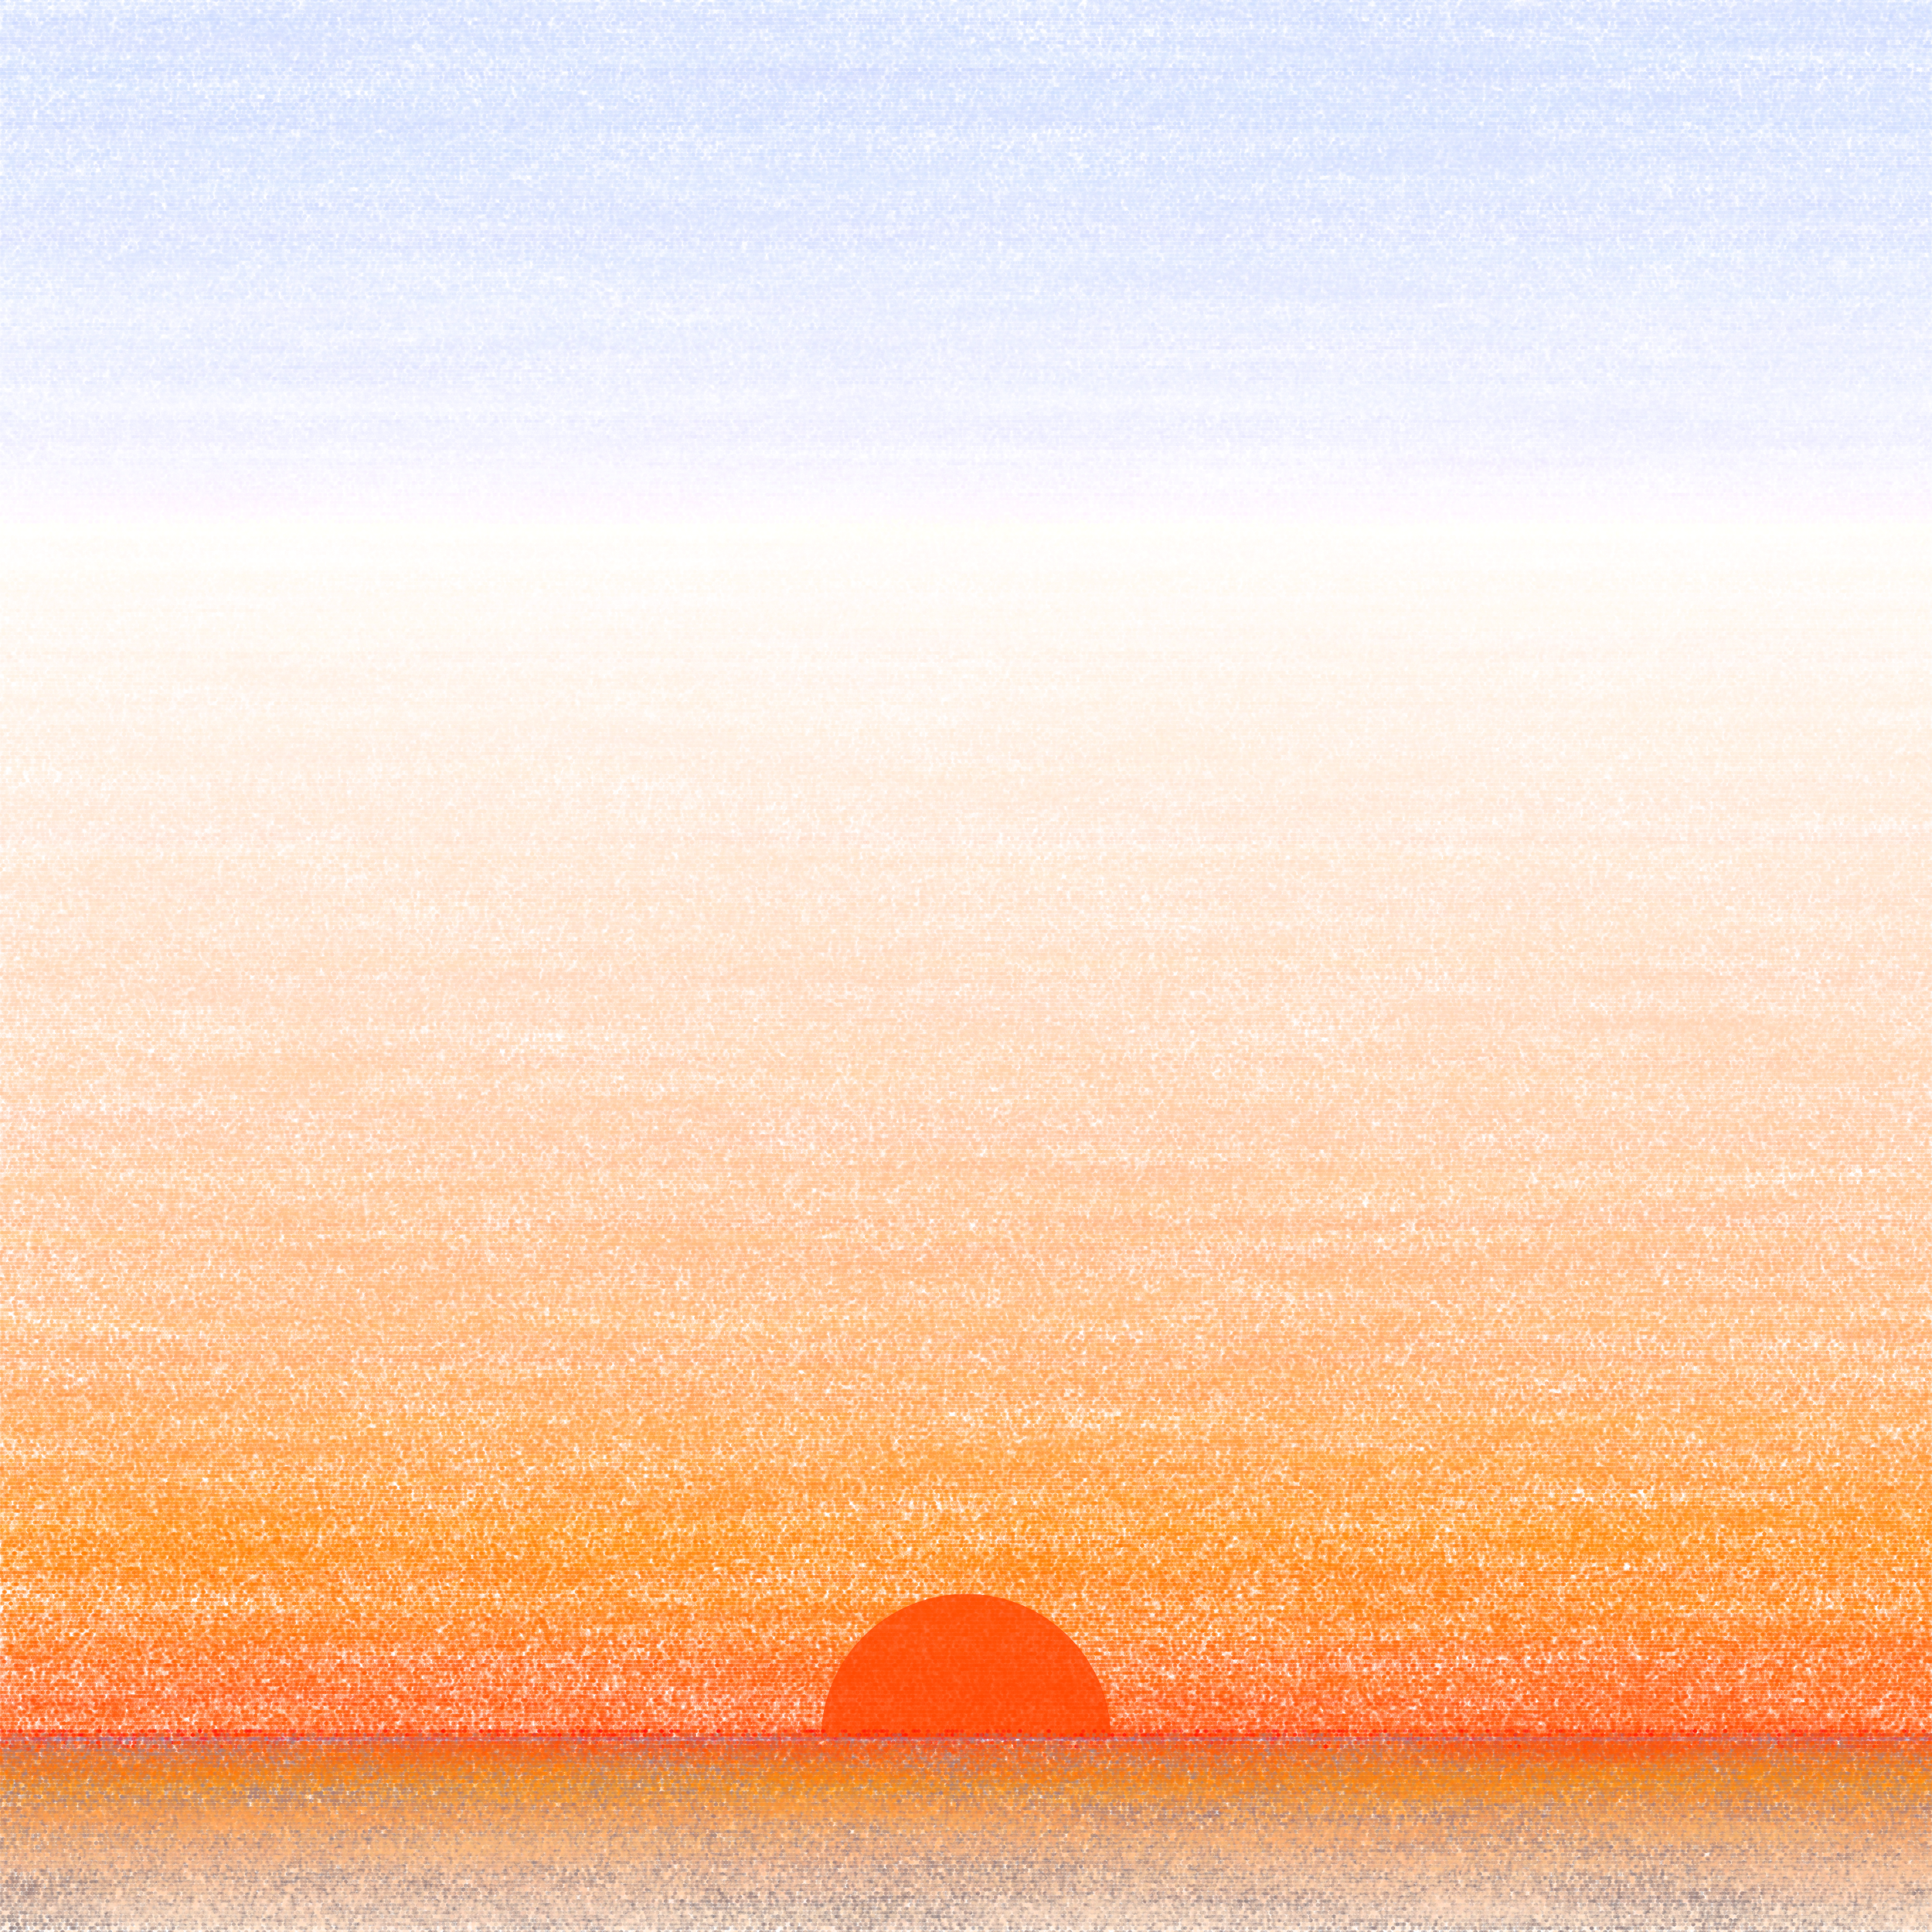 Sunrise Drawing Line Art  Free photo on Pixabay  Pixabay